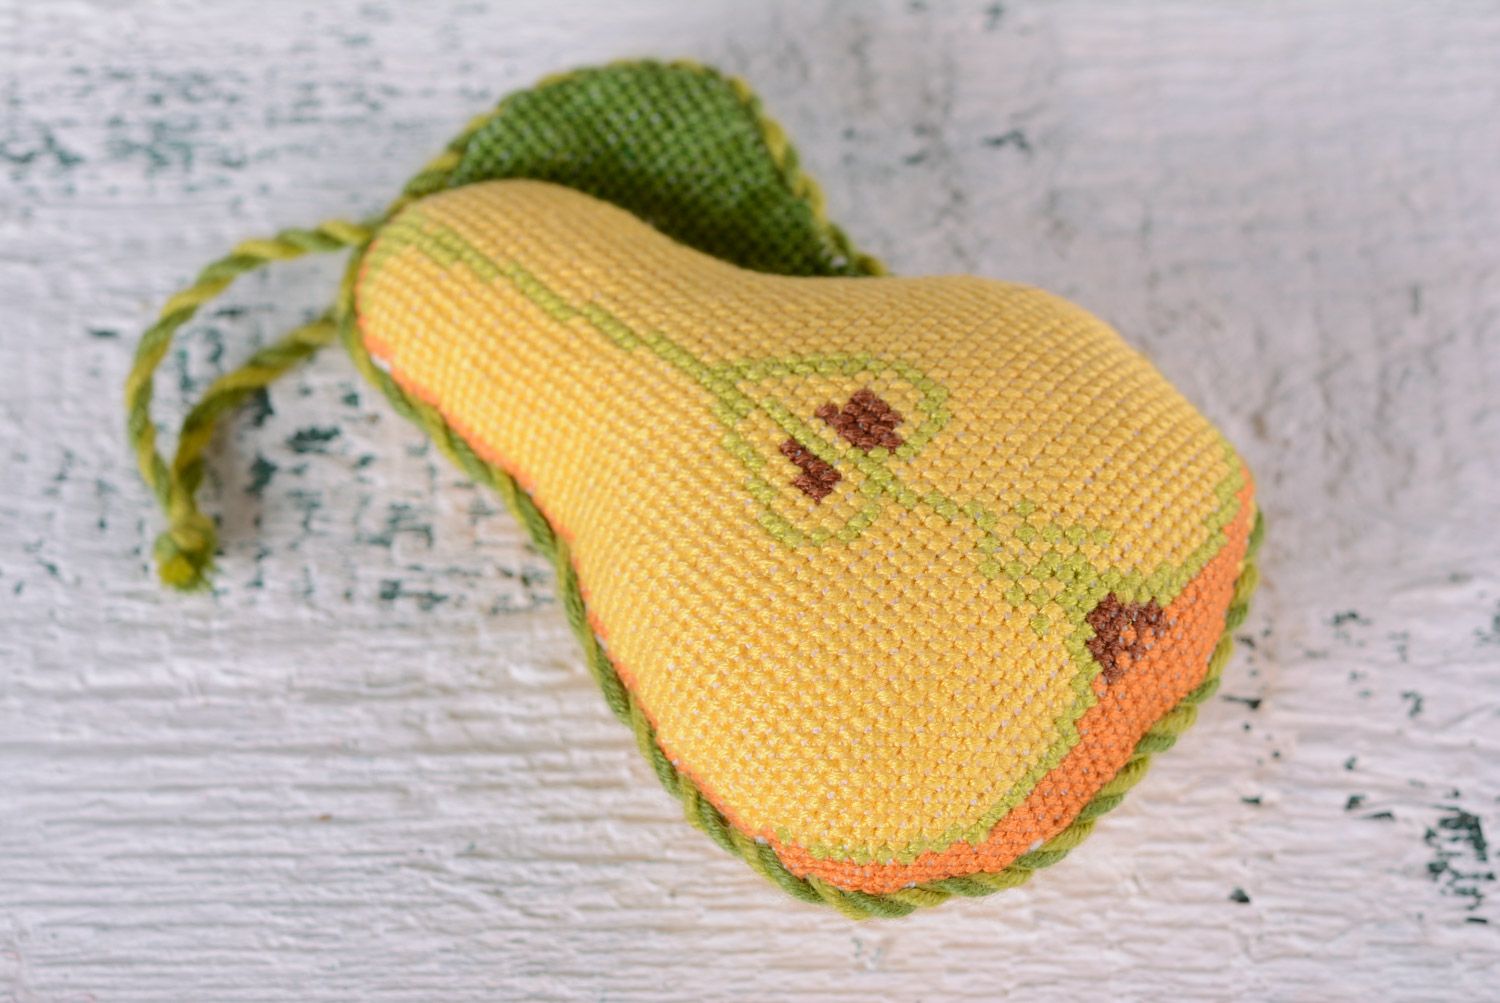 Мягкая игольница ручной работы в виде груши желтая с петелькой вышитая крестиком фото 1